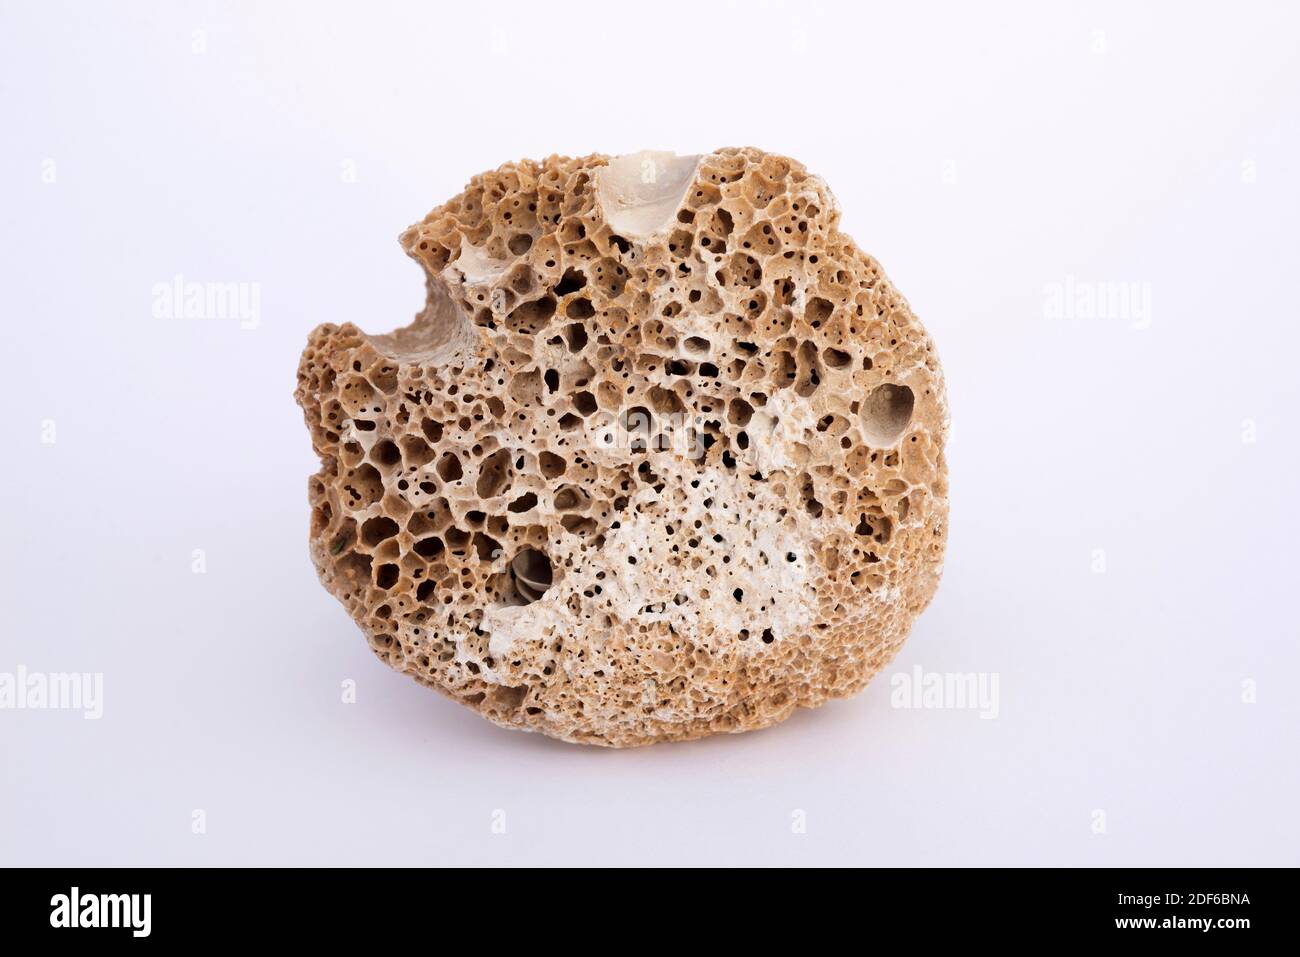 Bioerosion eines kalkhaltigen Gesteins für Muscheln. Bioerosion ist ein chemischer Prozess, der von lebenden Organismen verursacht wird. Die Probe stammt aus Portitxol, Stockfoto